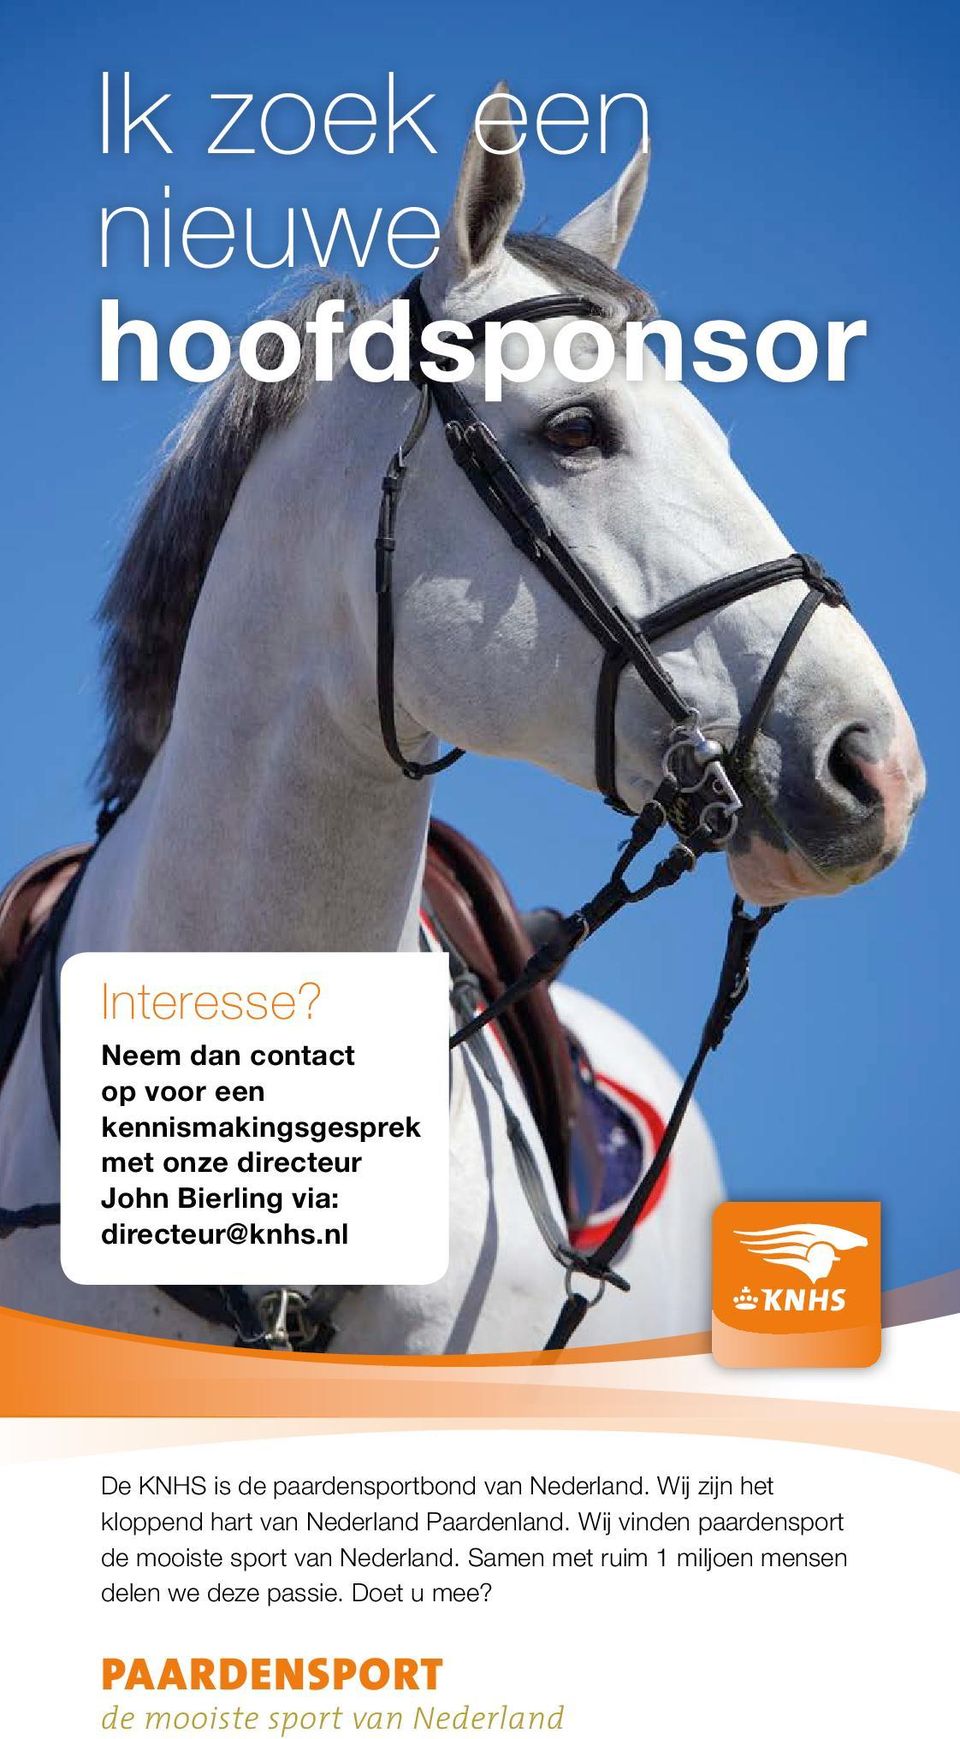 nl De KNHS is de paardensportbond van Nederland. Wij zijn het kloppend hart van Nederland Paardenland.